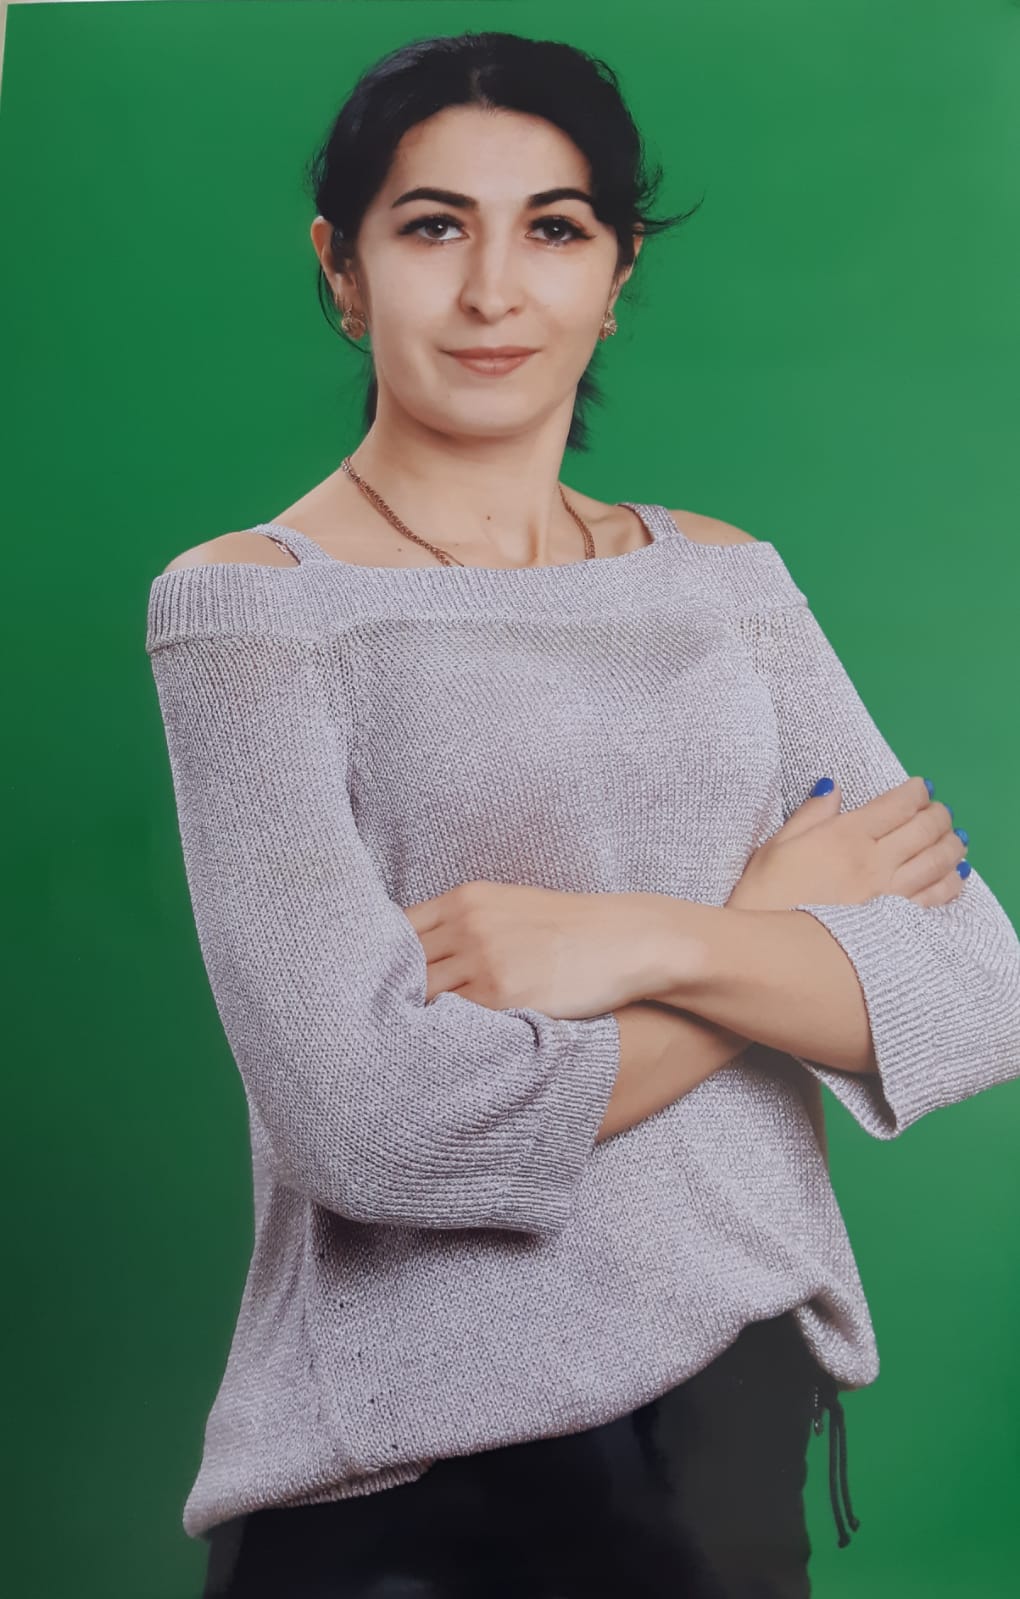 Воспитатель первой категории Кубанова Зарема Хамбалиевна.